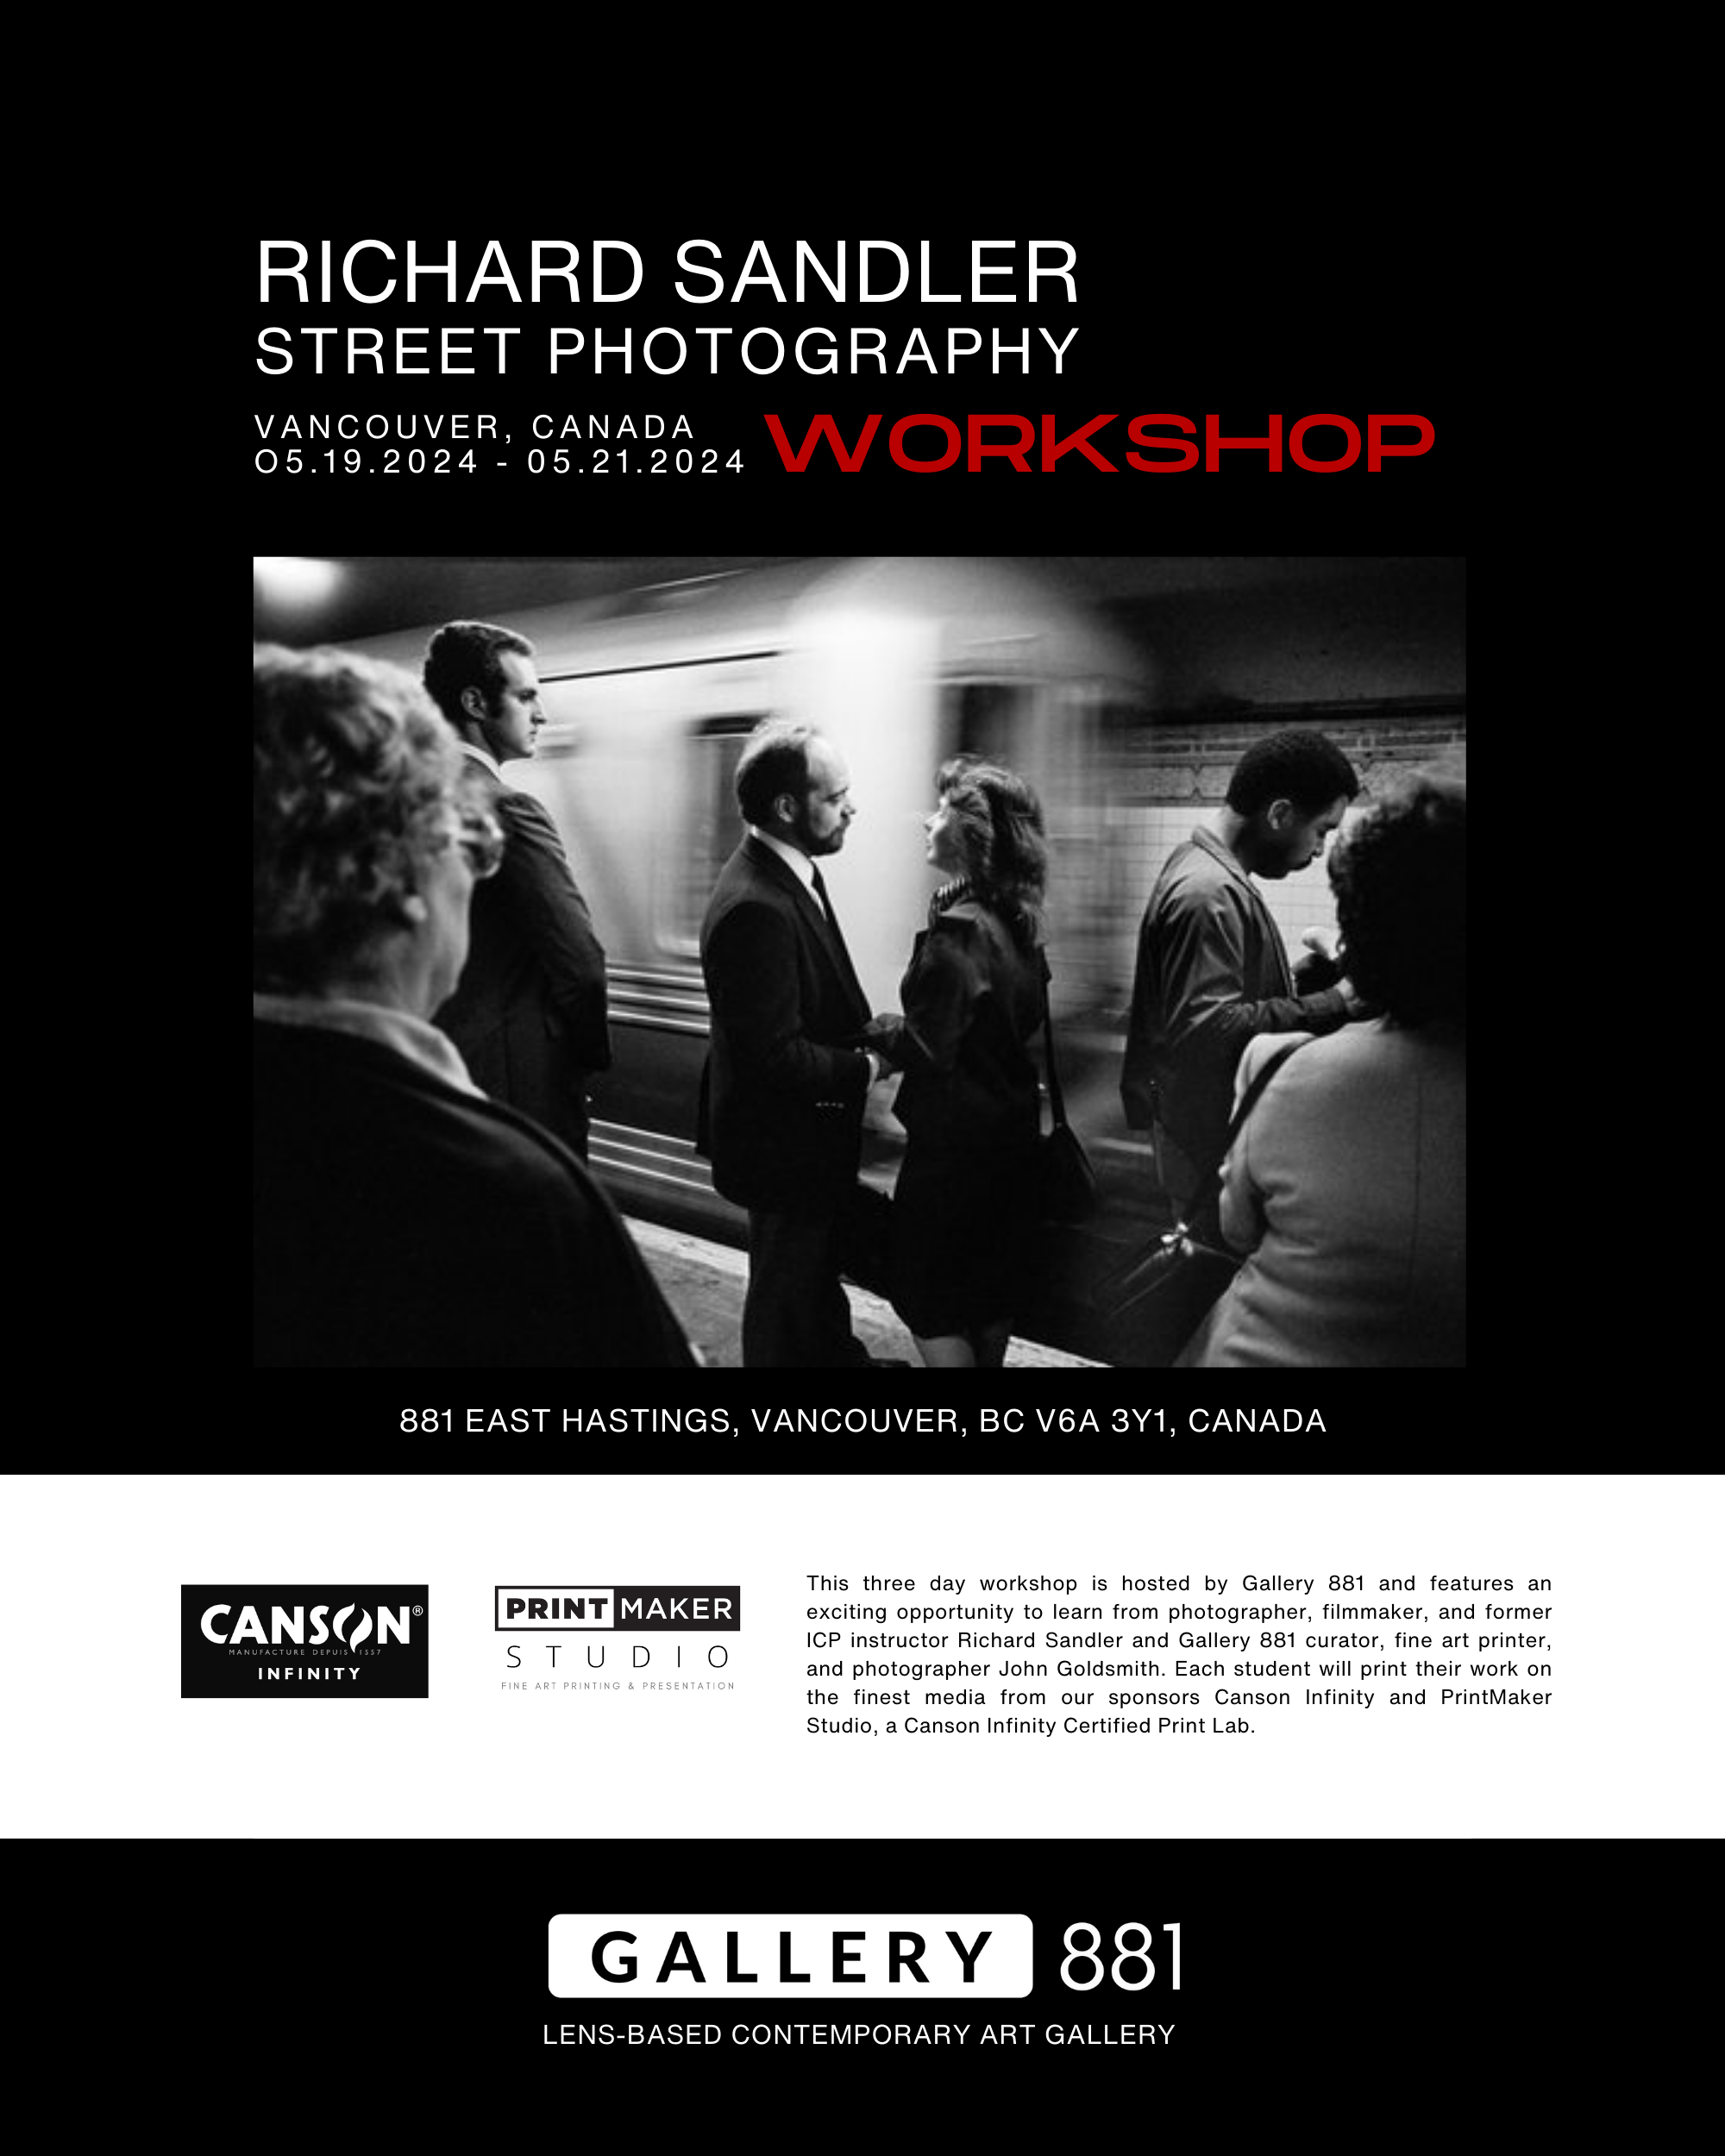 Gallery-881-Richard-Sandler-Workshop-2.png